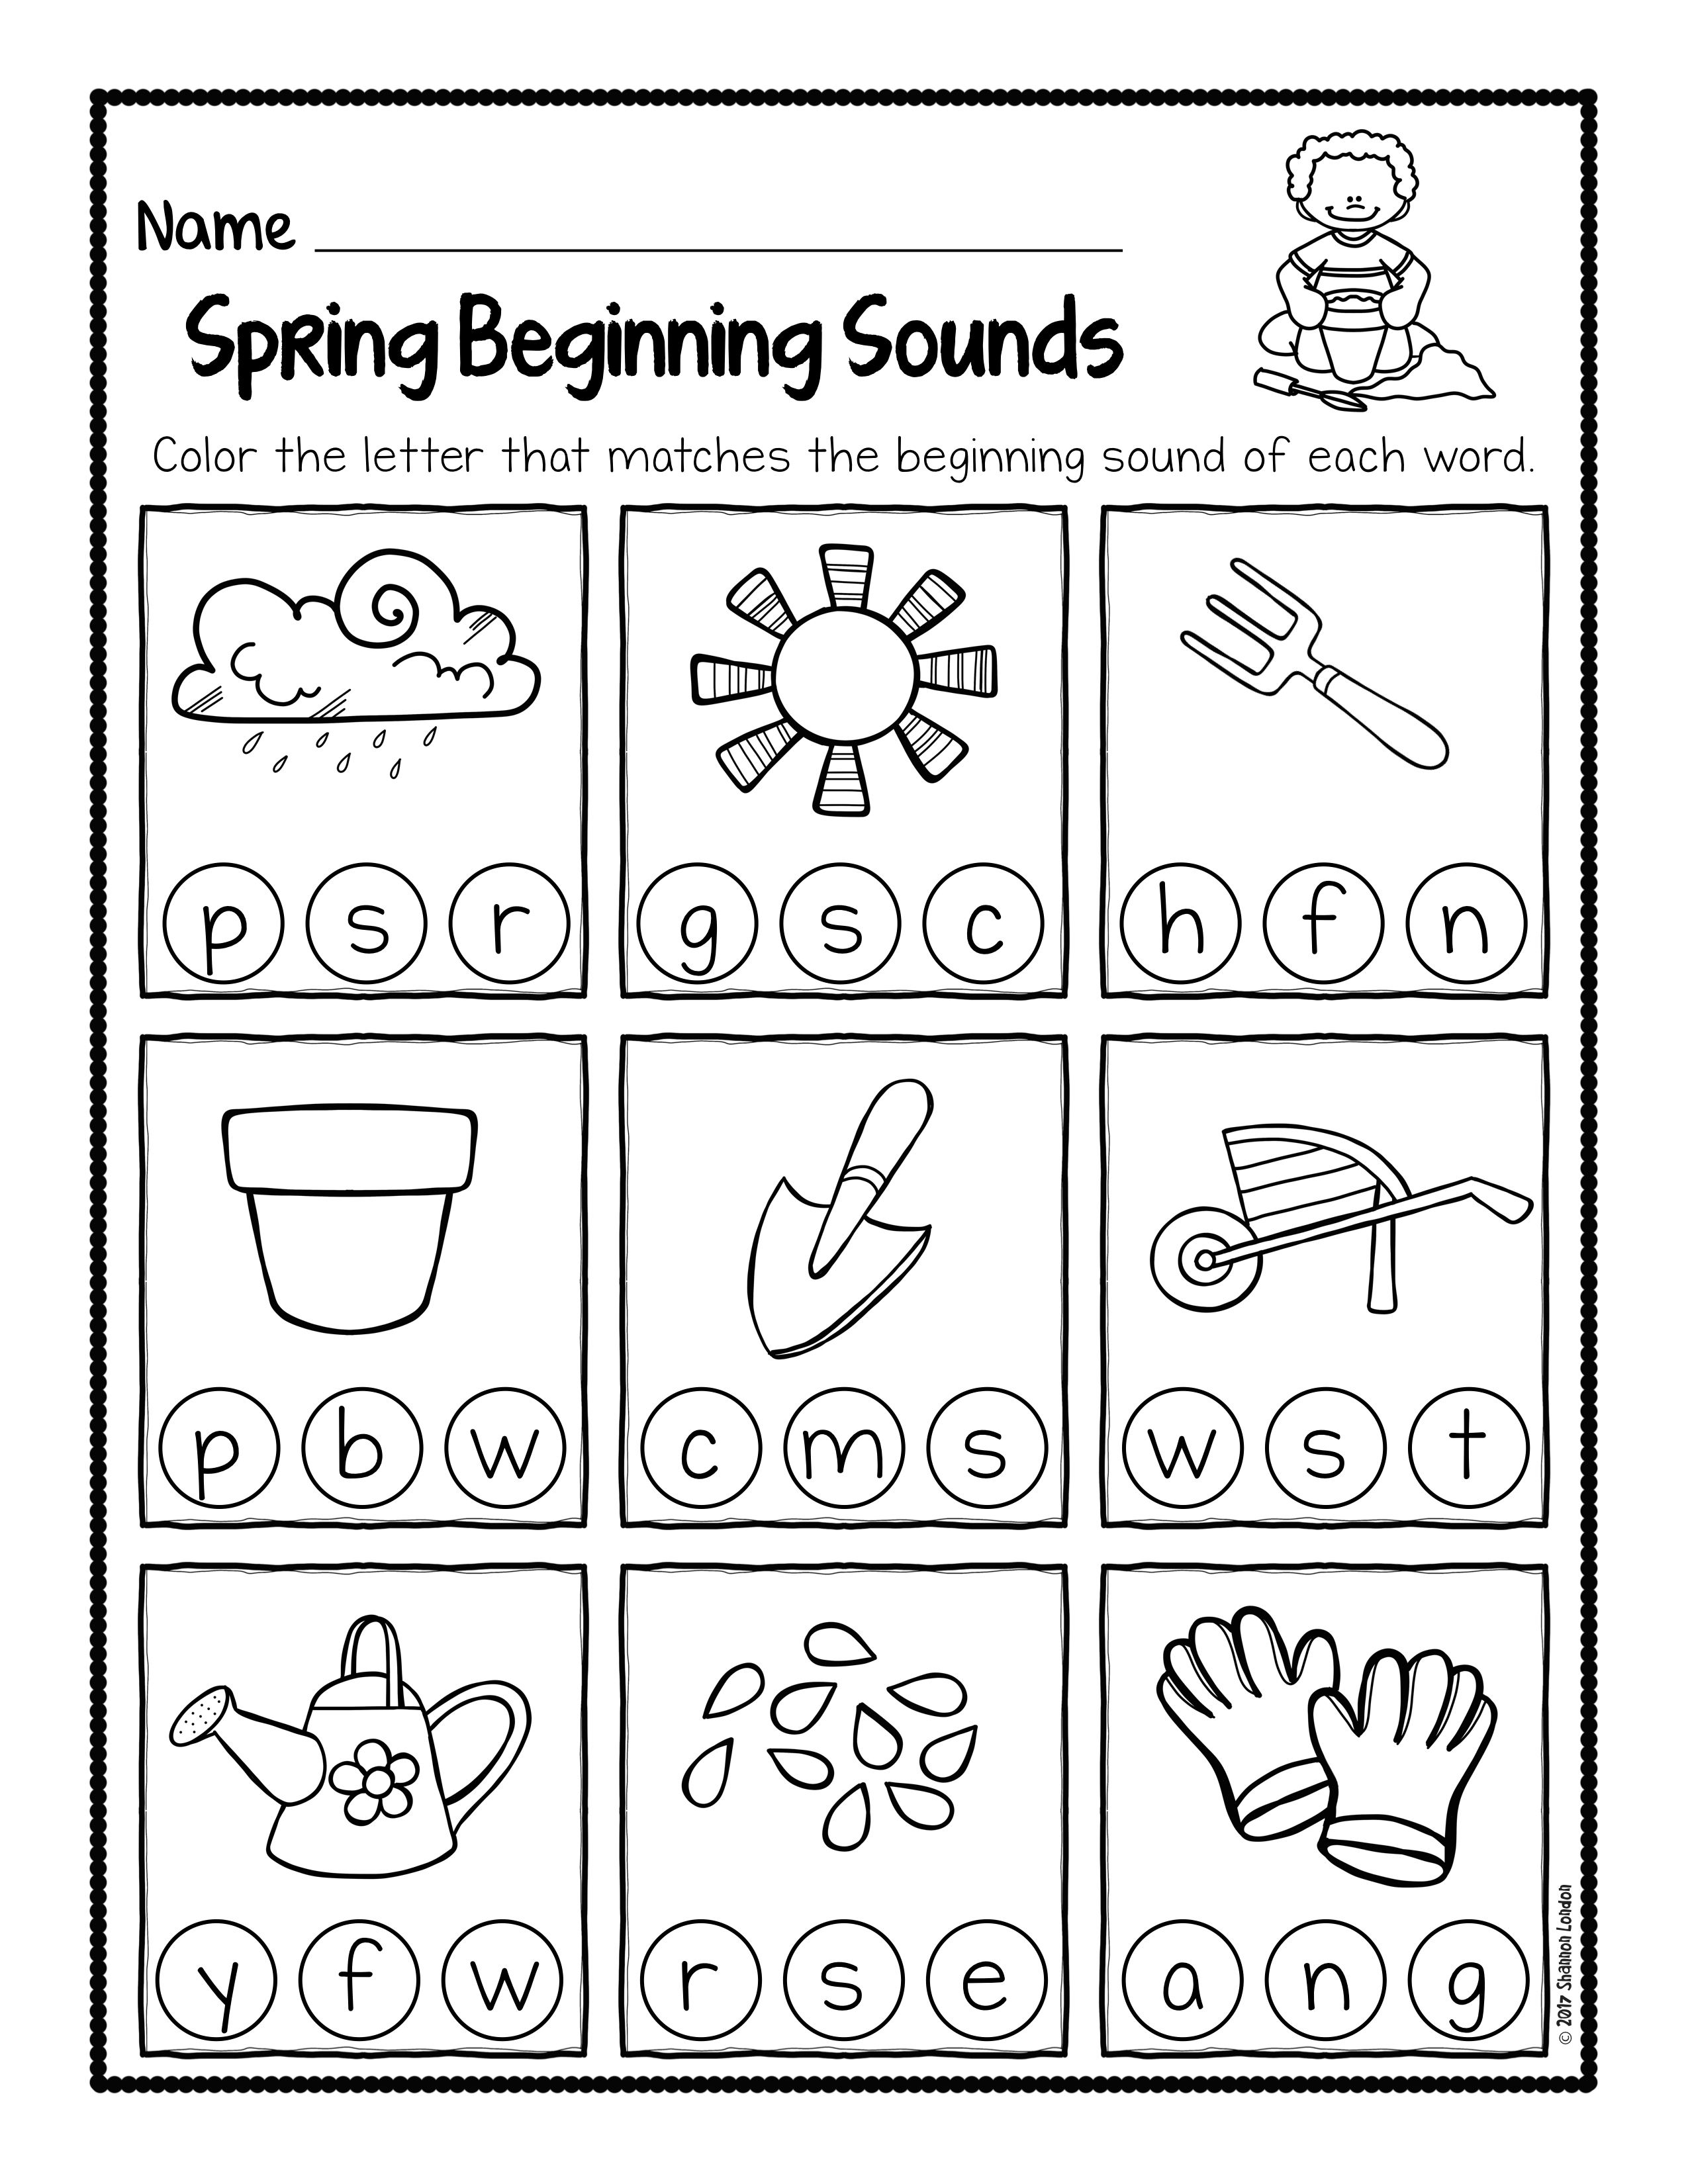 Spring Beginning Sound Worksheets 002